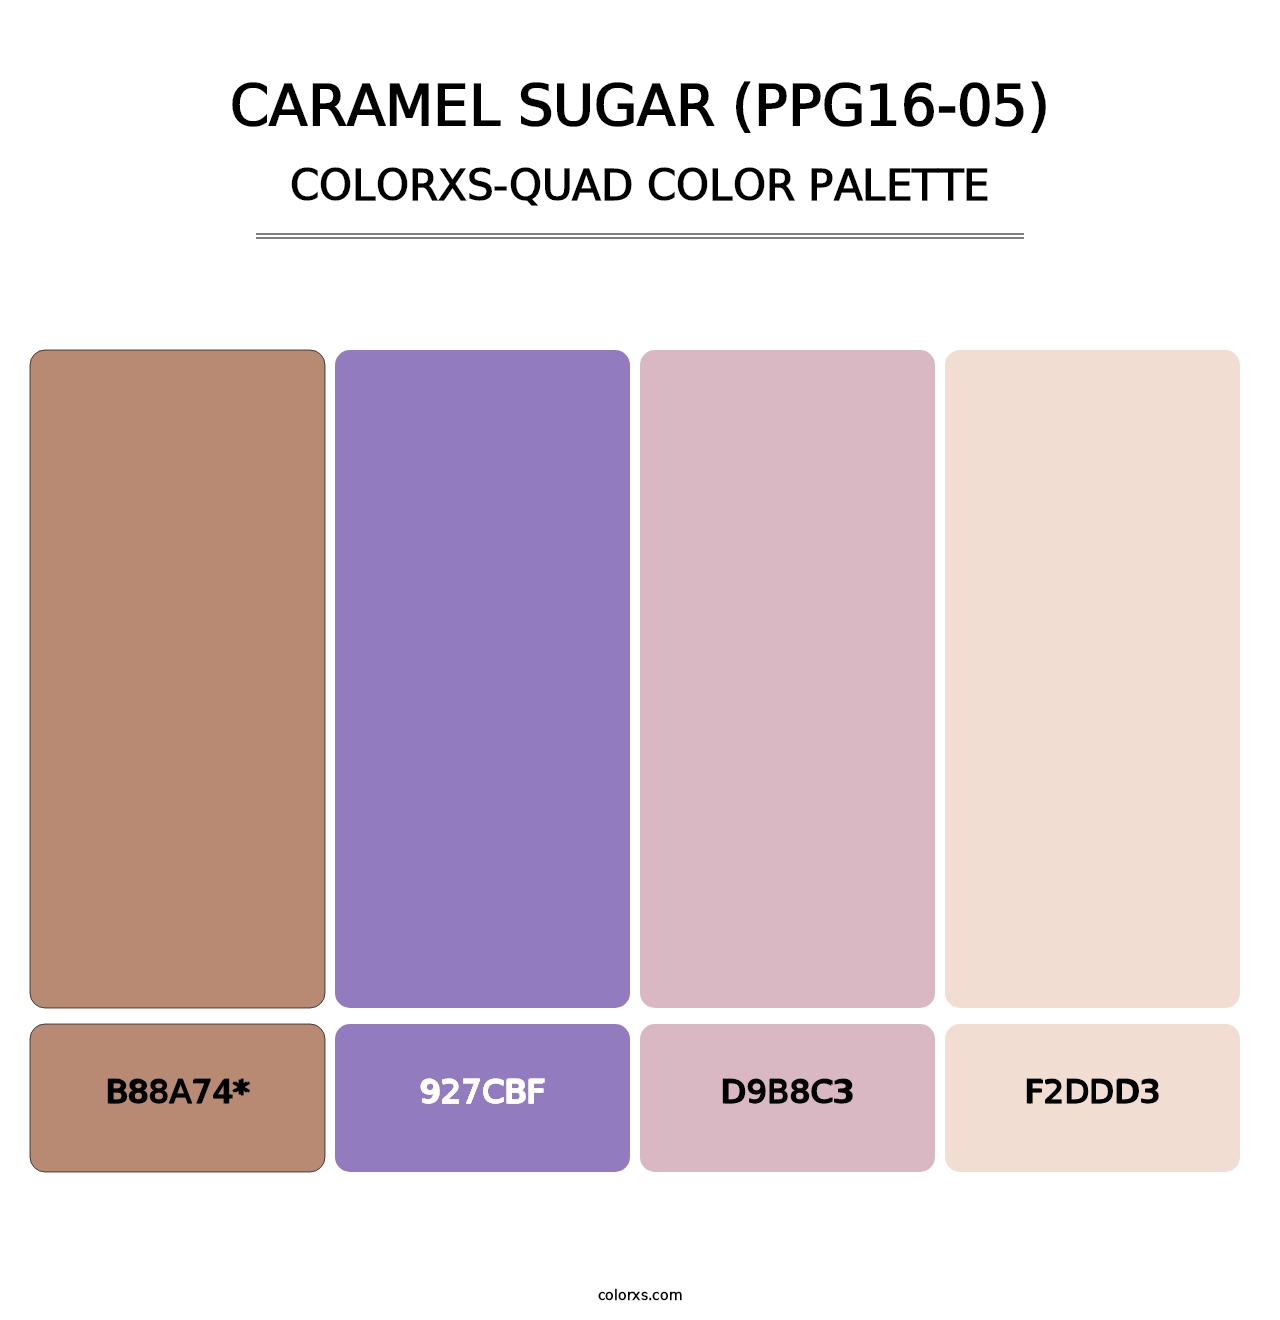 Caramel Sugar (PPG16-05) - Colorxs Quad Palette